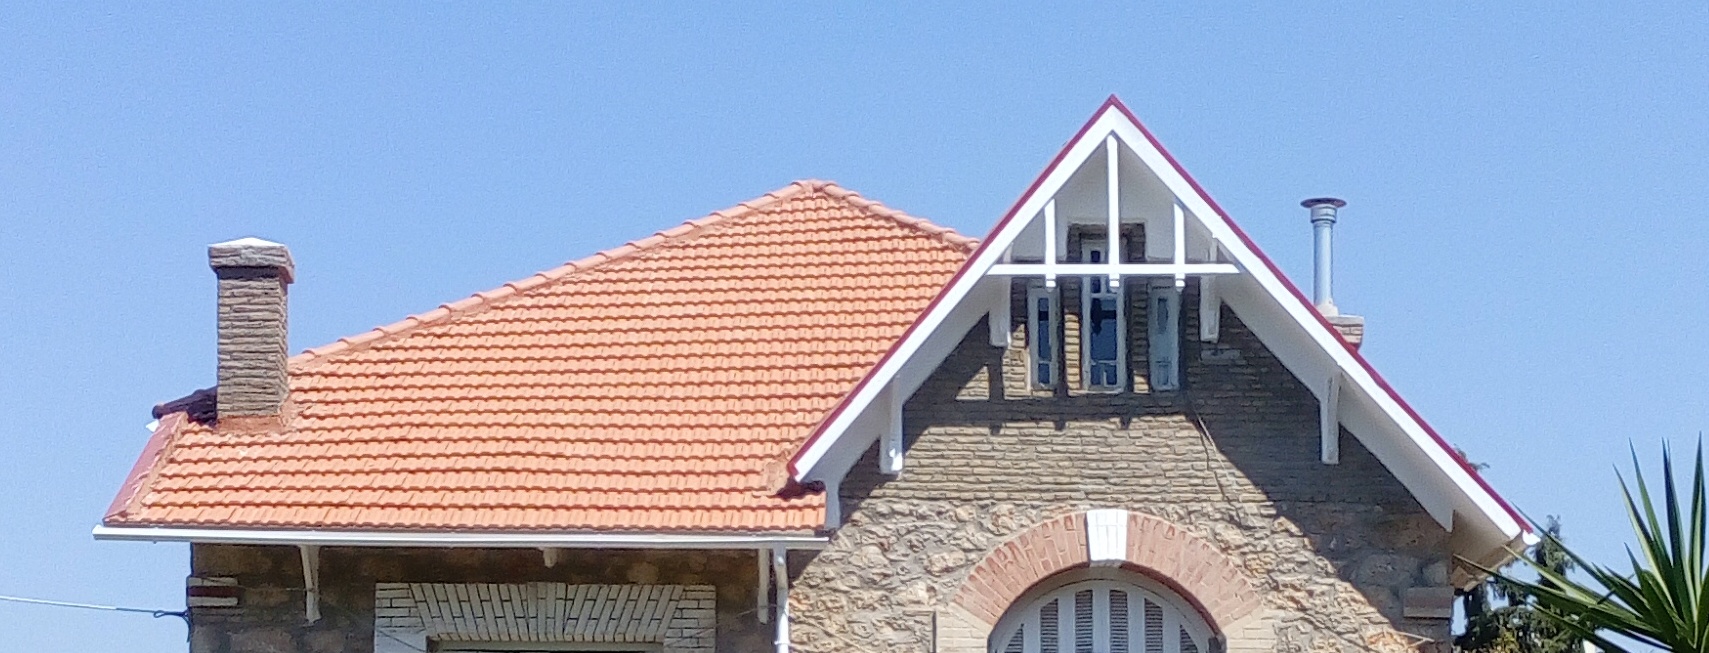 Κατασκευή στέγης με κεραμίδια Παναγιωτόπουλου